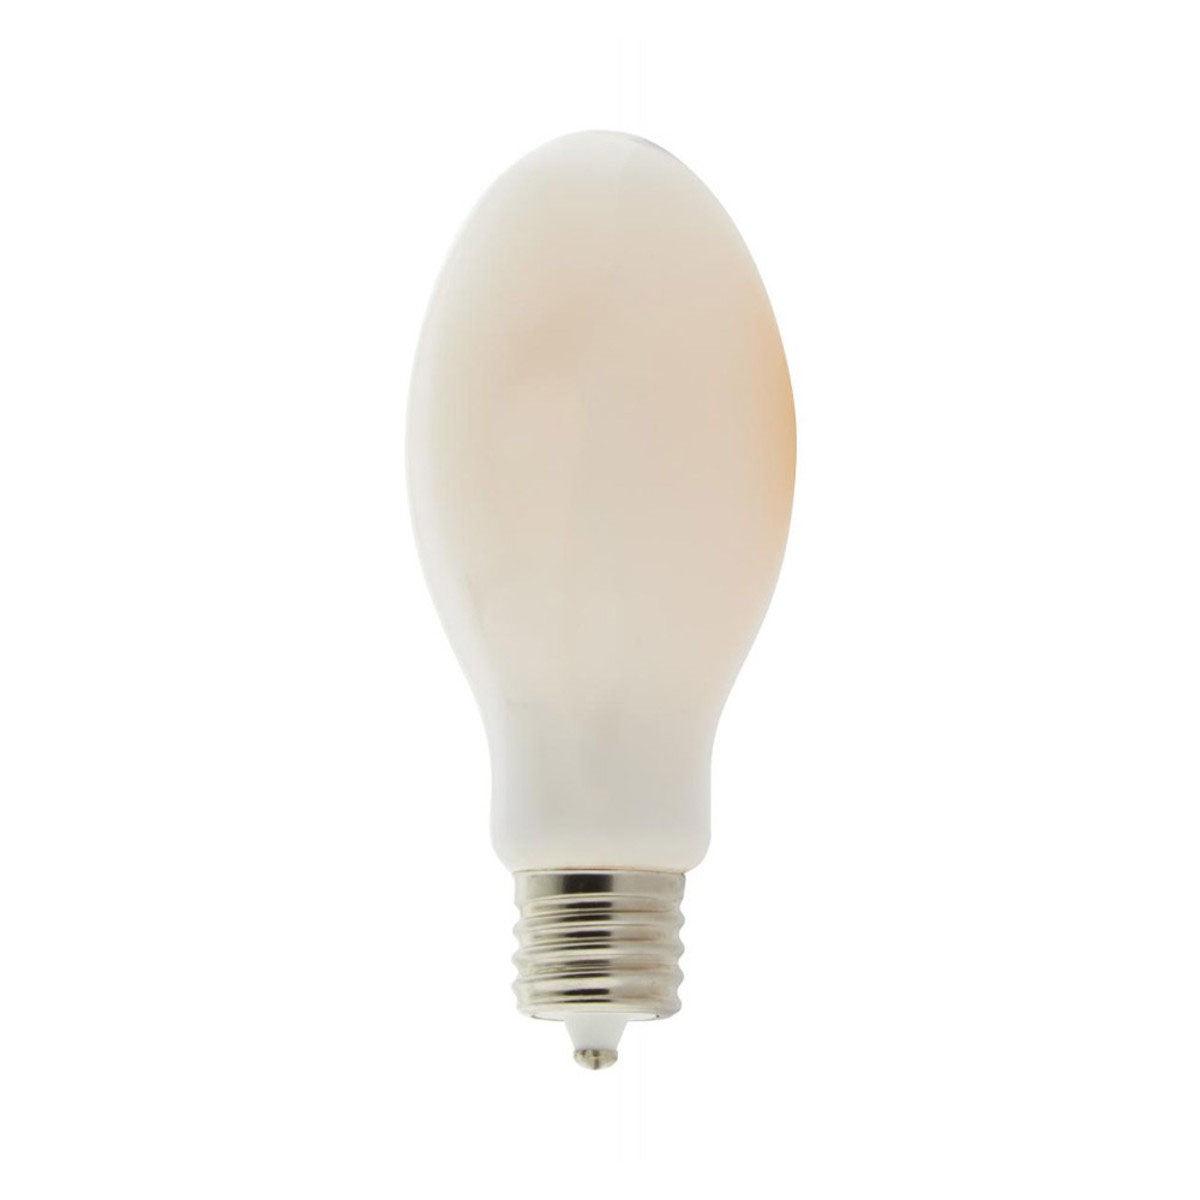 LED ED28 Bulb, 36 Watt, 5000 Lumens, 5000K, EX39 Mogul Extended Base, White Frosted Finish - Bees Lighting